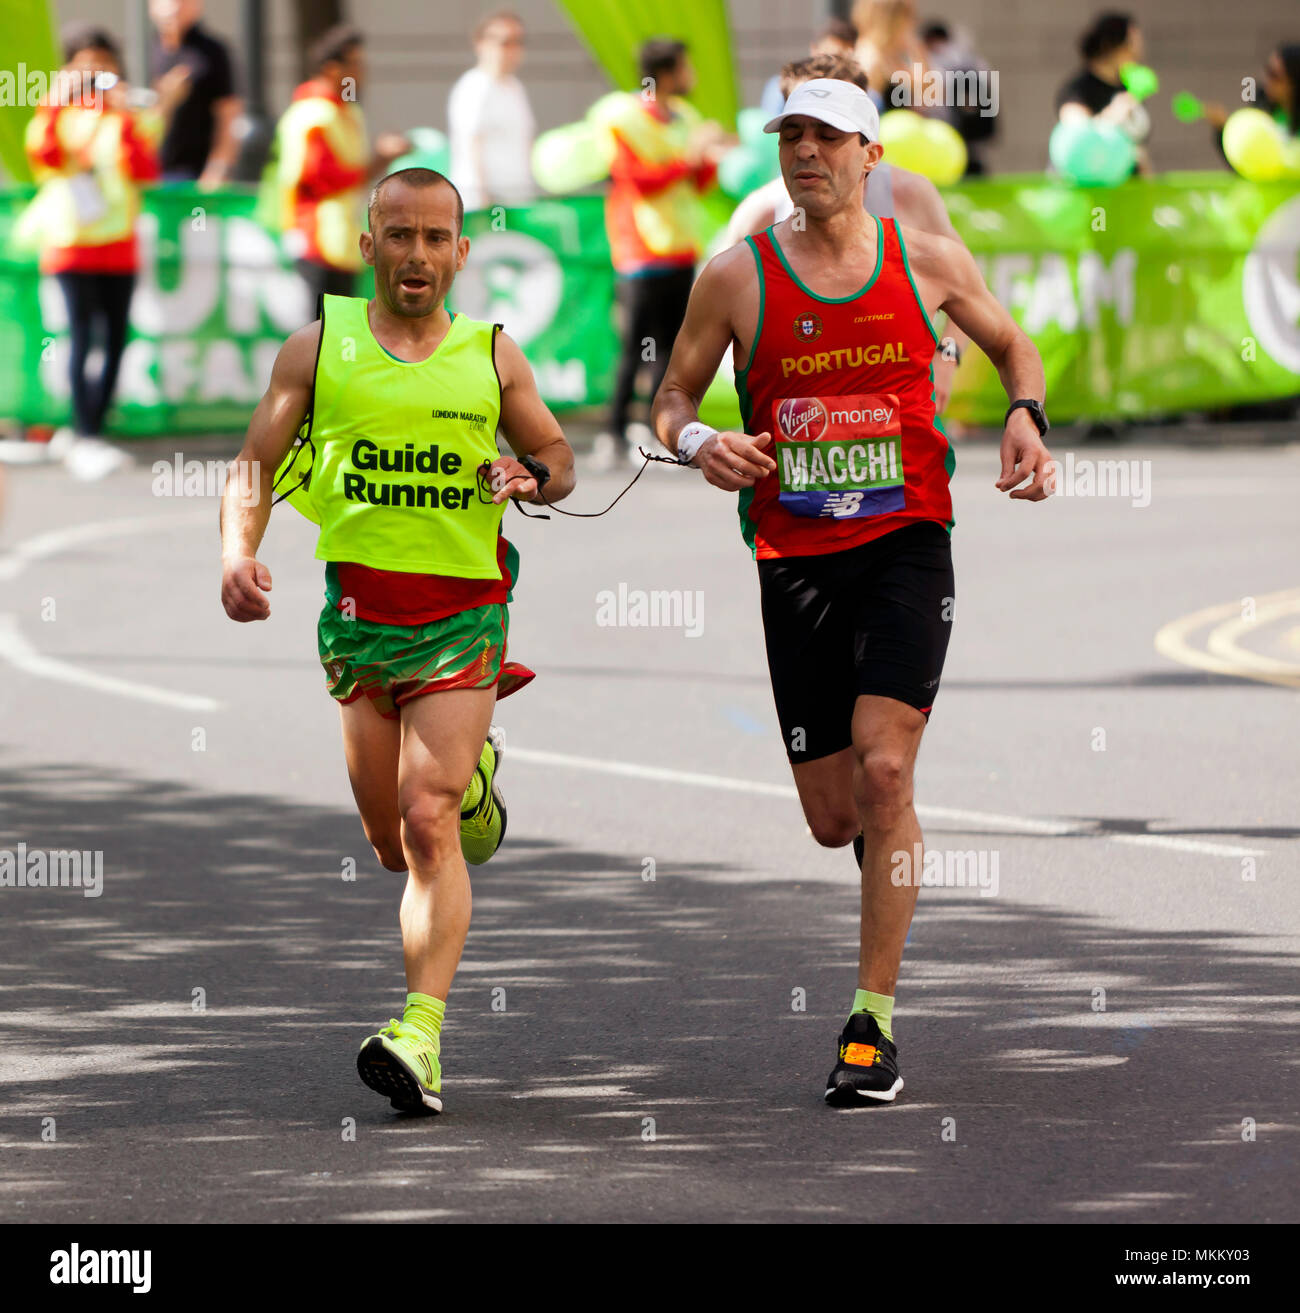 Gabriel Macchi in lizza per il Portogallo nel mondo Para atletica World Cup, parte del 2018 Maratona di Londra. Ha finito nono in un tempo di 02:44:02 Foto Stock